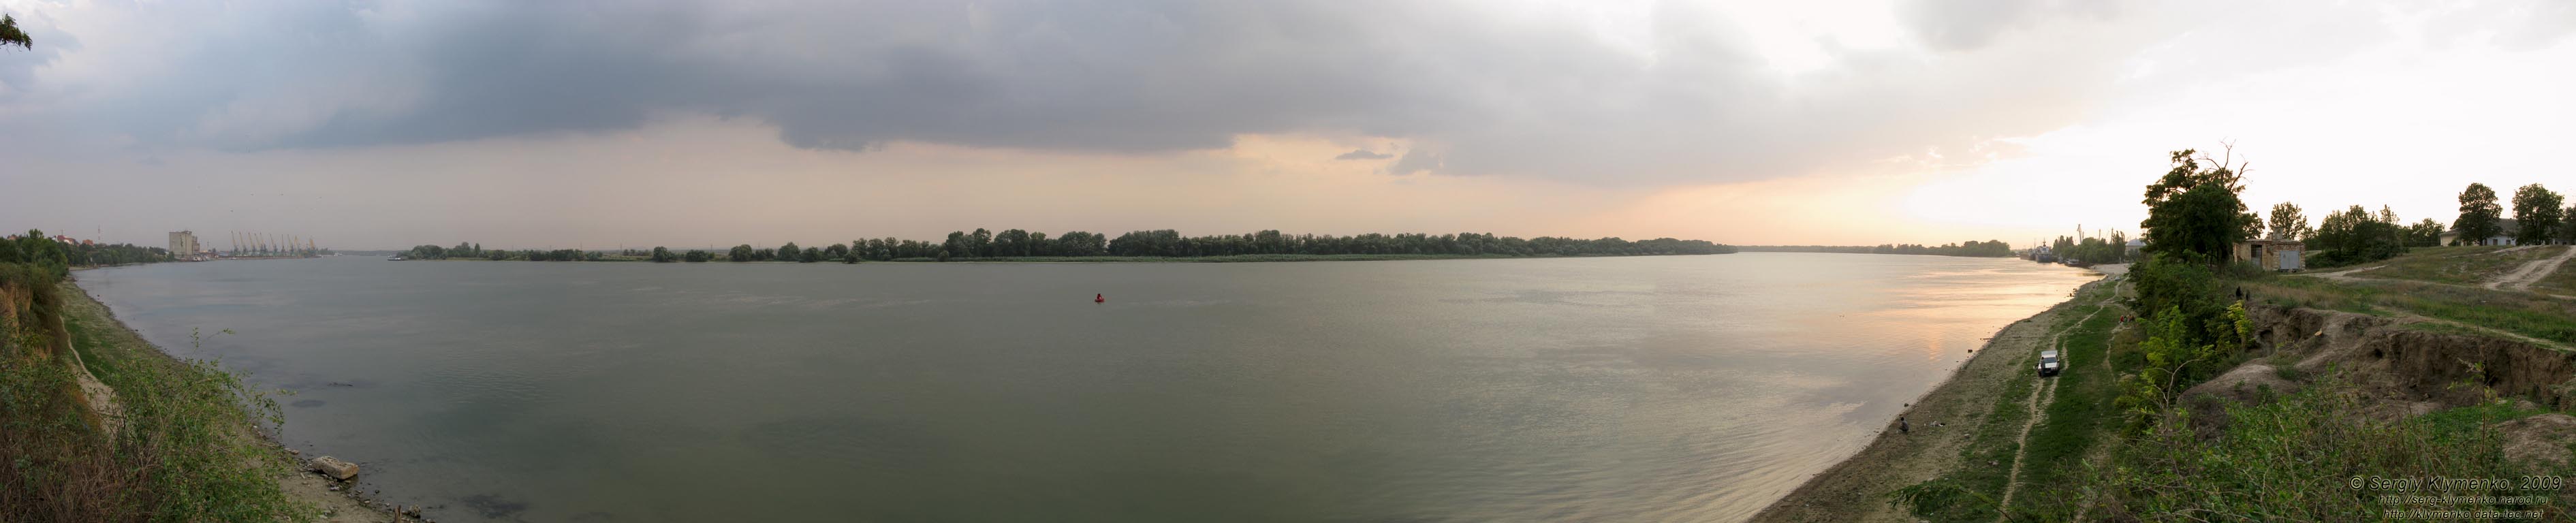 Одесская область. Измаил. Фото. Река Дунай (античное название - Истр). Панорама ~180°.